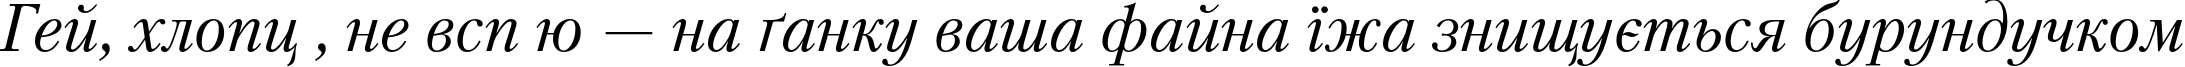 Пример написания шрифтом PetersburgC Italic текста на украинском